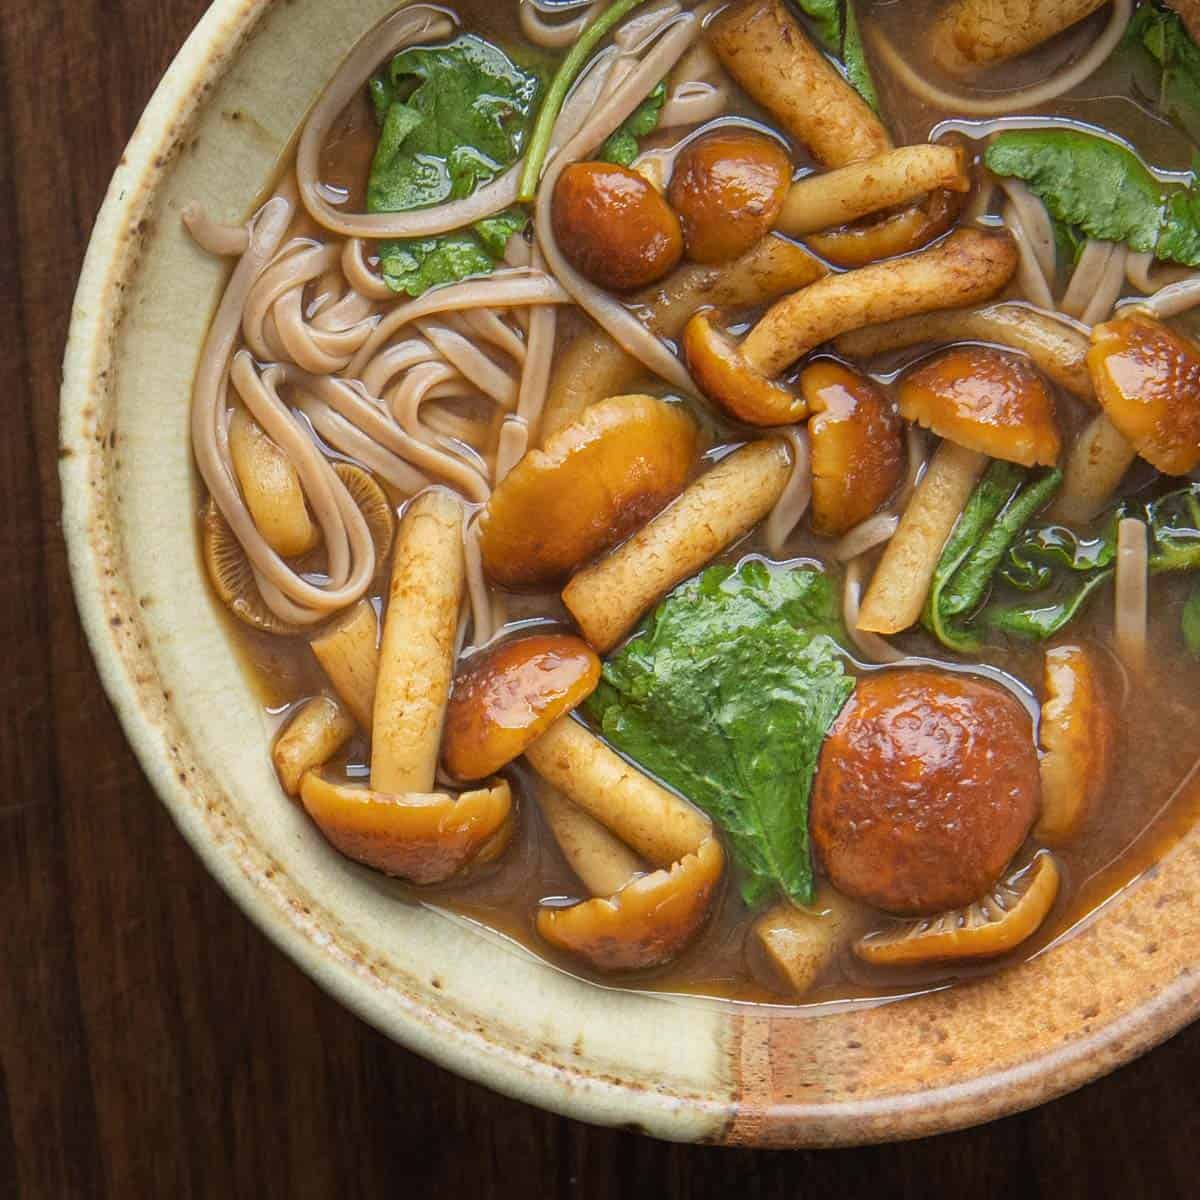 chestnut mushroom soup with soba noodles 